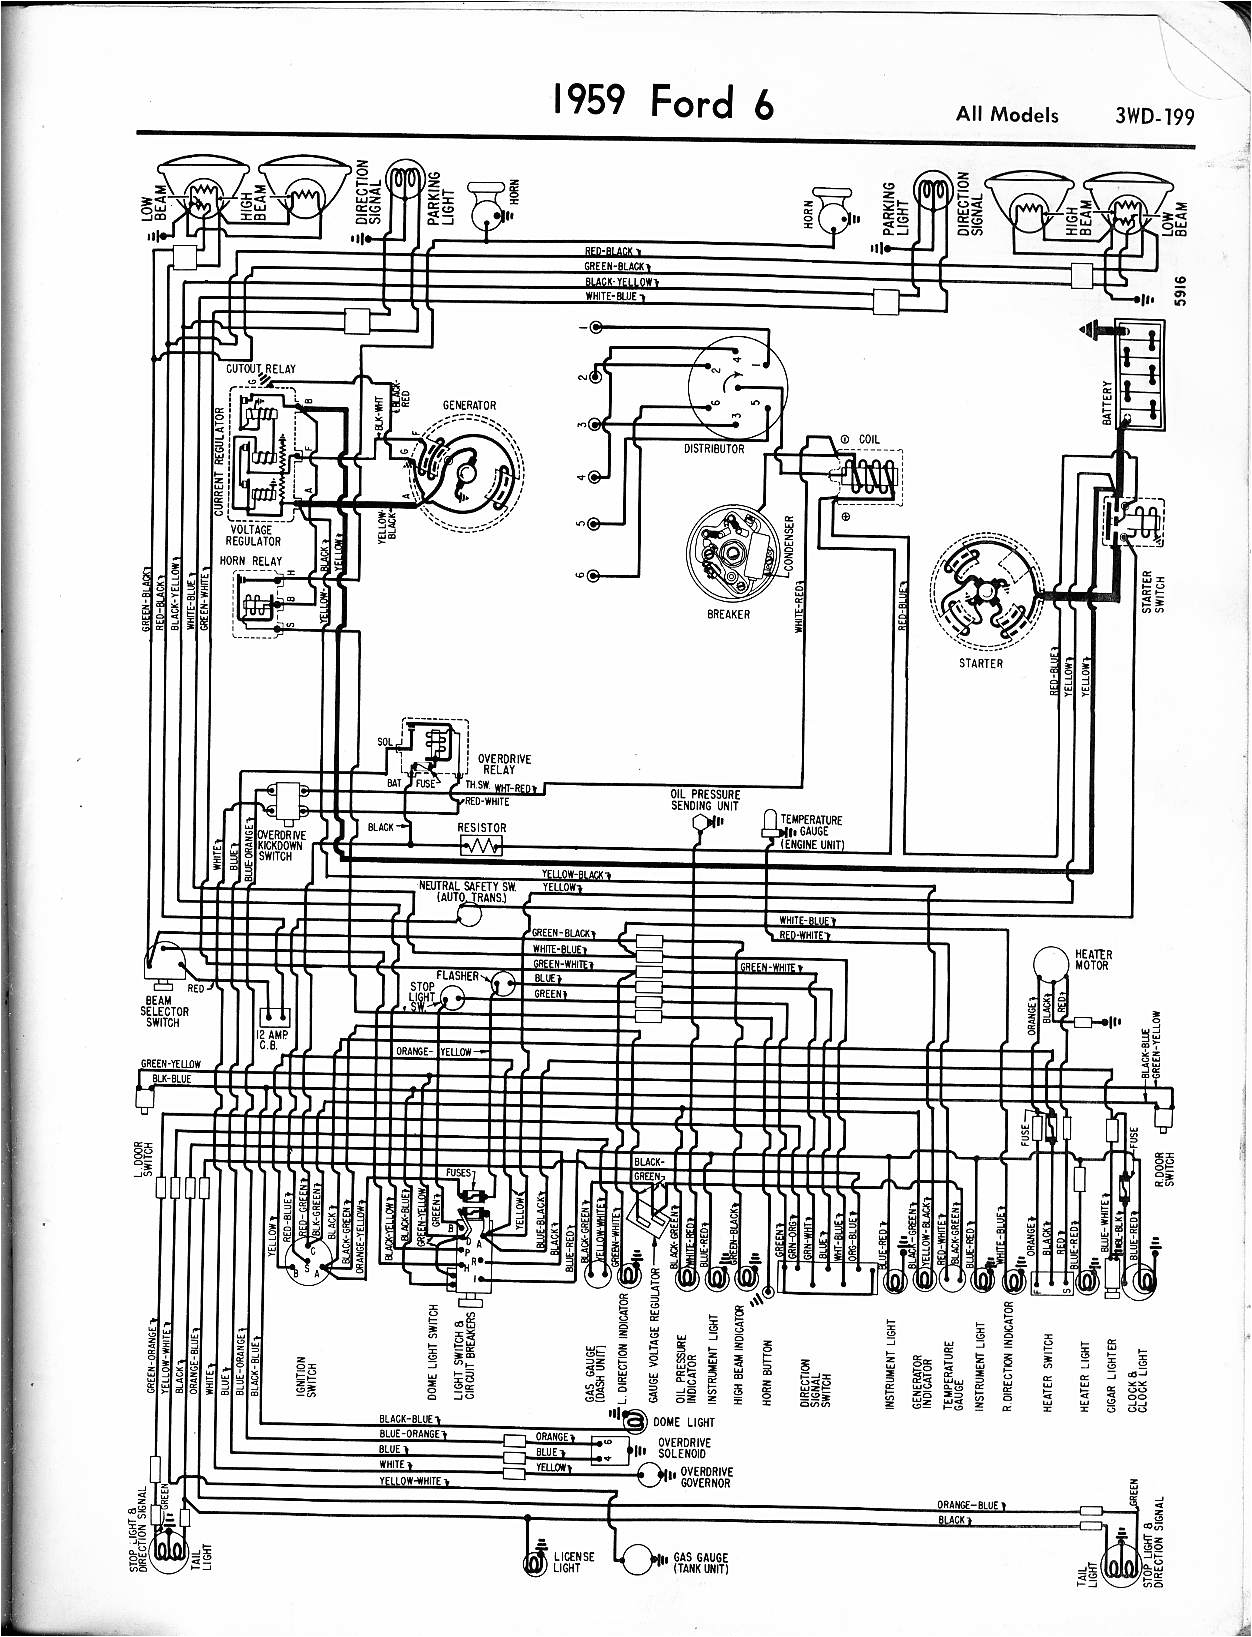 1959 ford F100 Wiring Diagram 1959 F100 Column Wiring Diagram